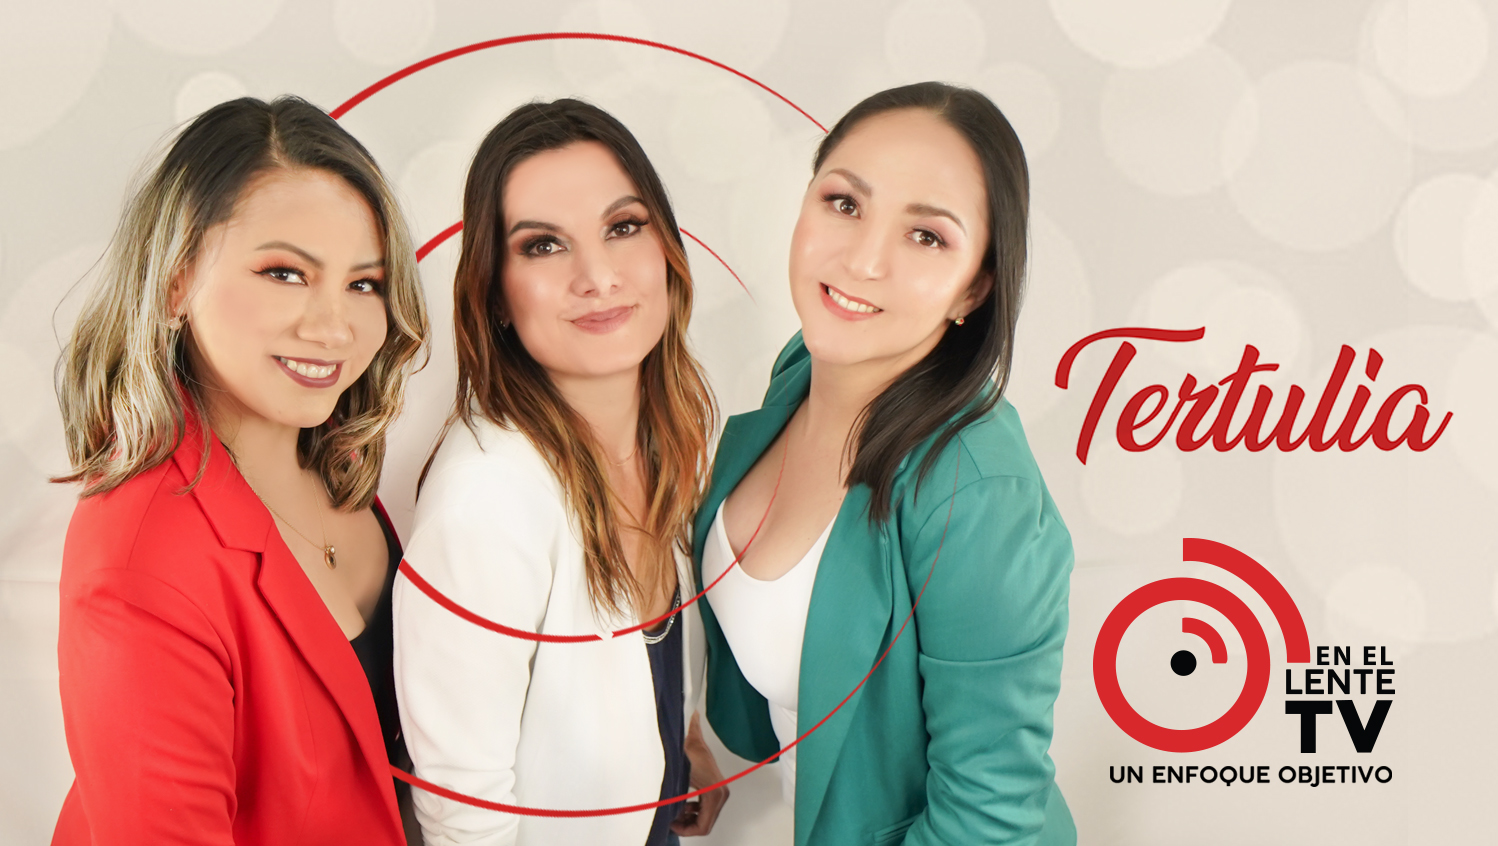 La “Tertulia” de Delci, Dorena y Andreina ¡Se disfruta mejor “En El Lente TV”!